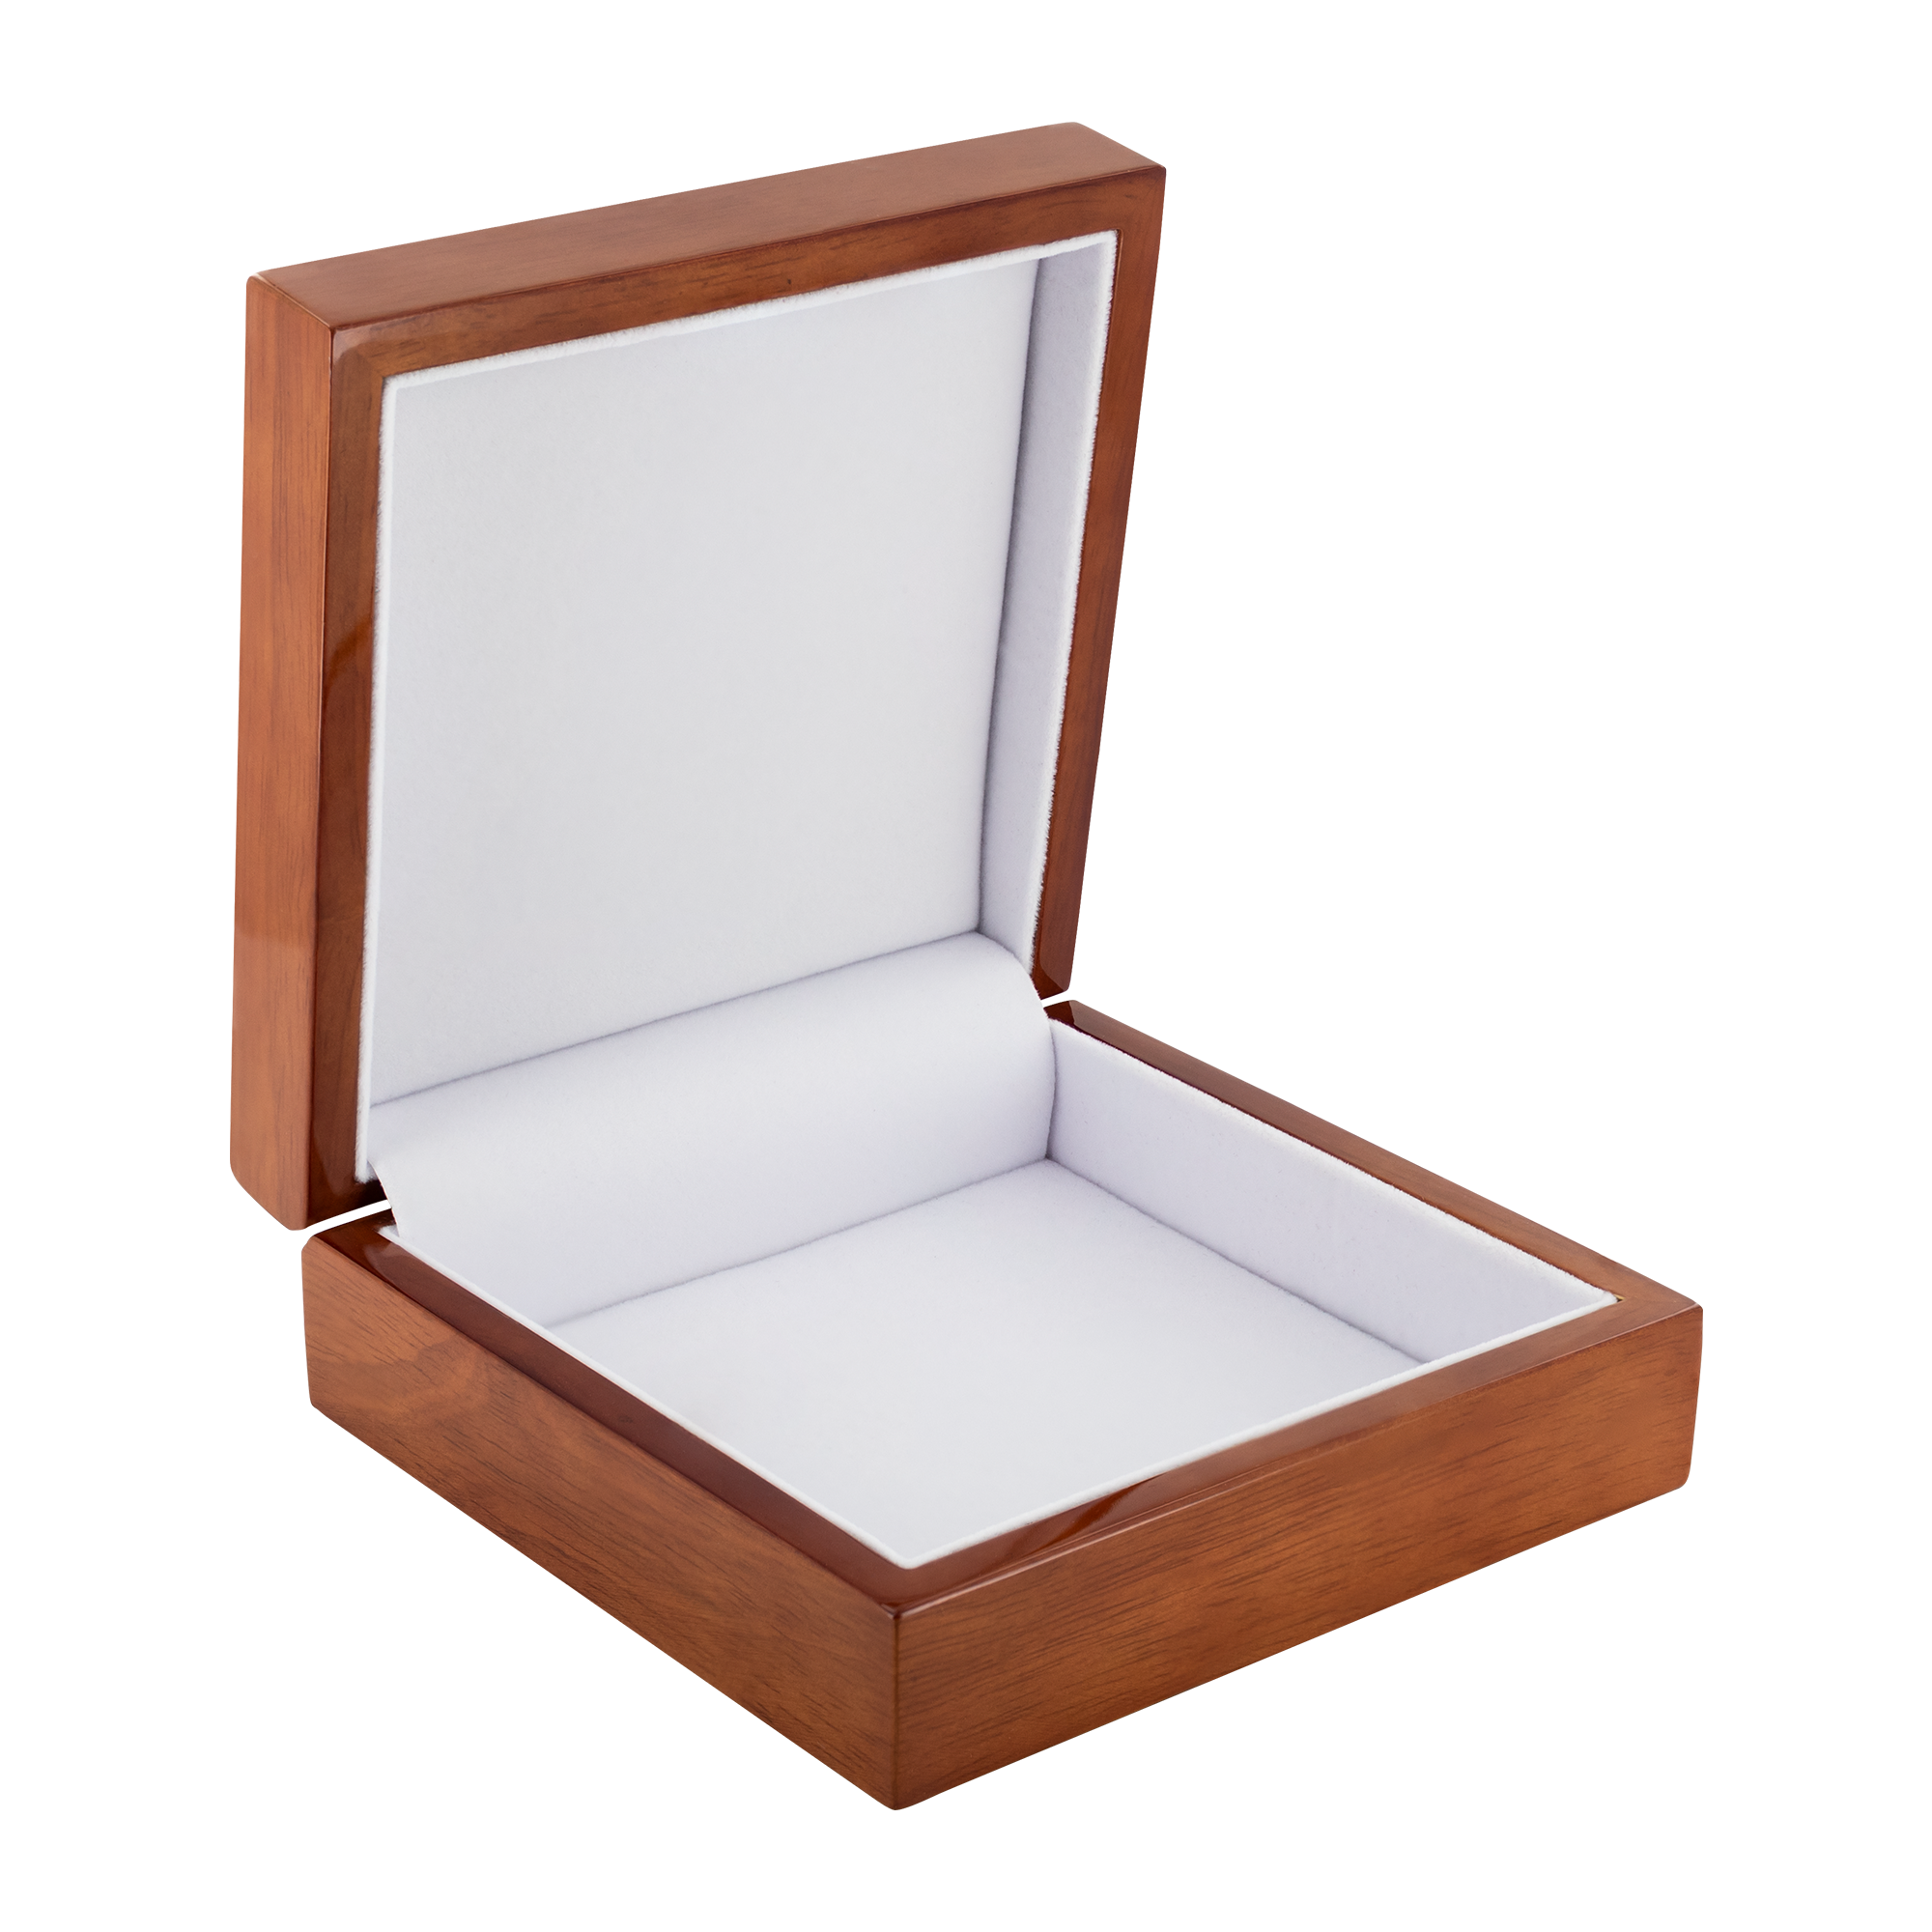 ocv Authentic Wood Jewelry Box